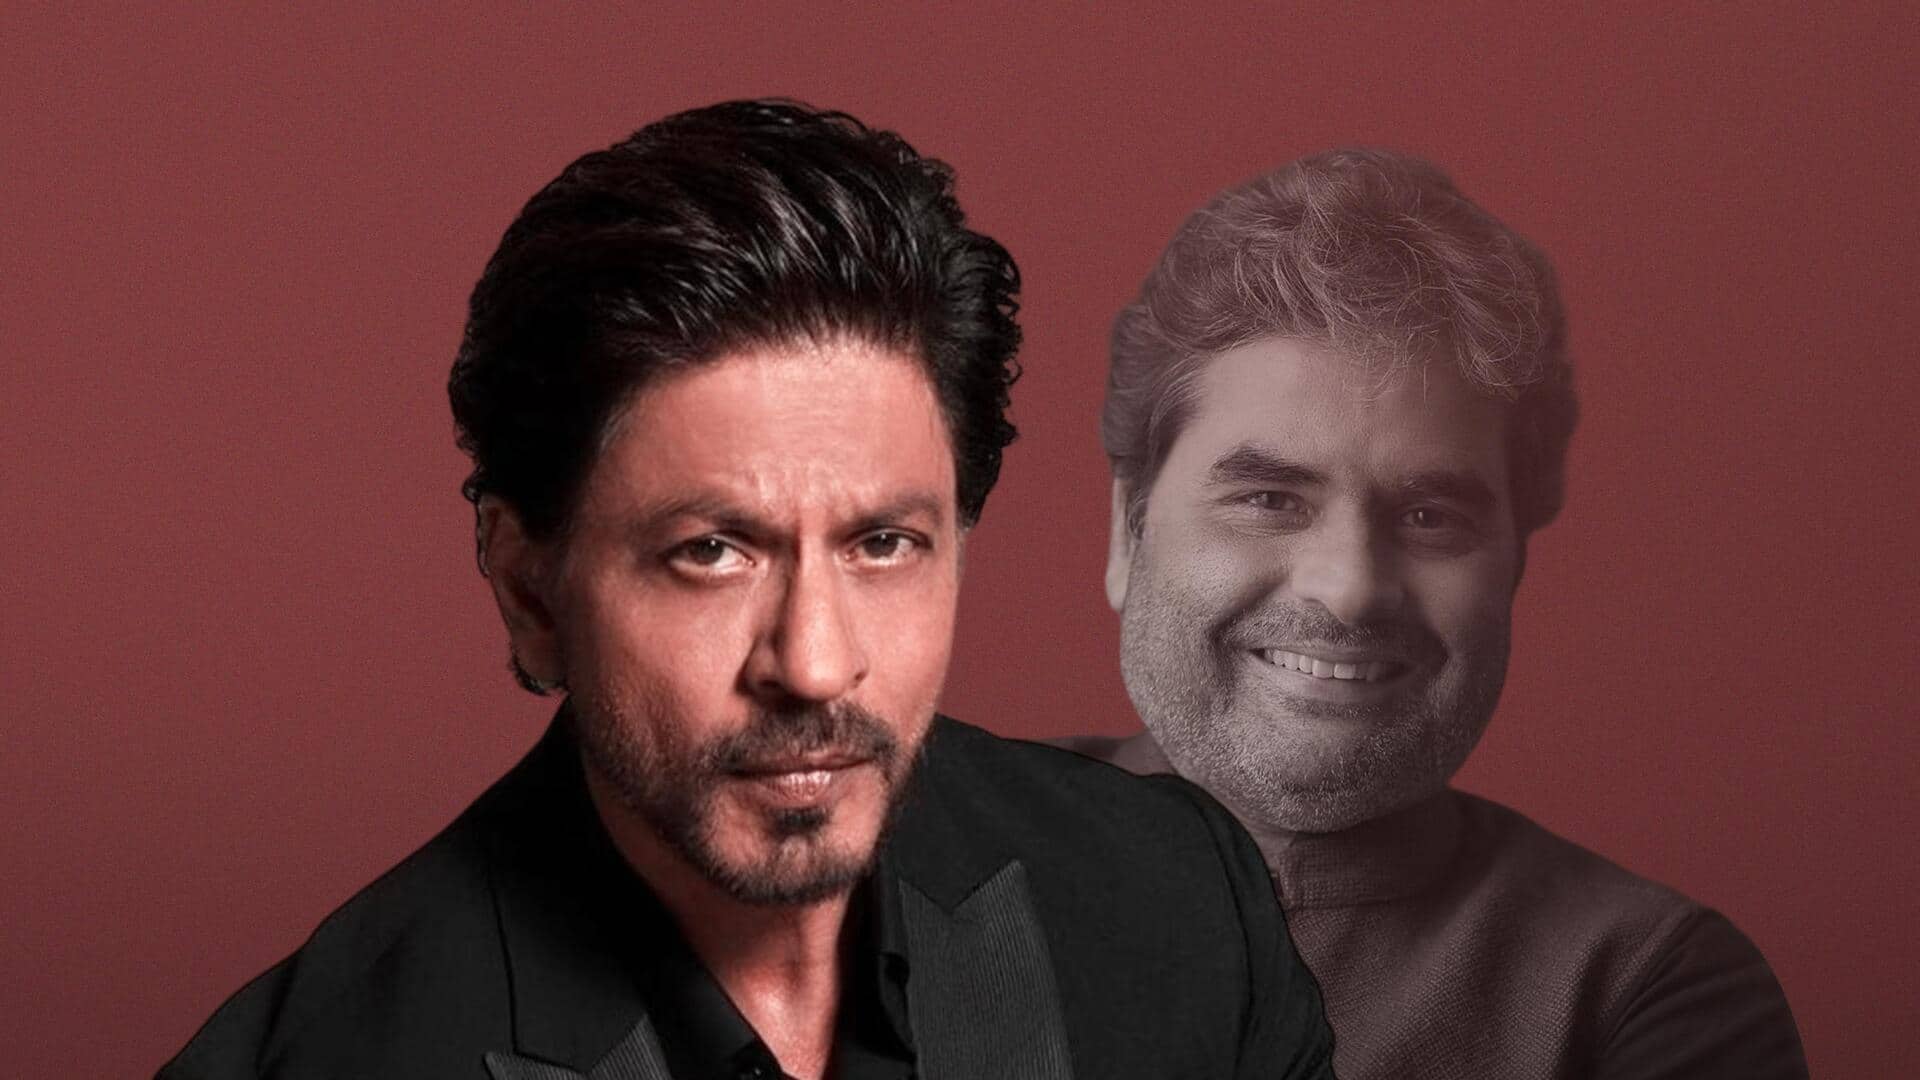 शाहरुख खान ने विशाल भारद्वाज की फिल्म के लिए भरी हामी? जानें सच्चाई